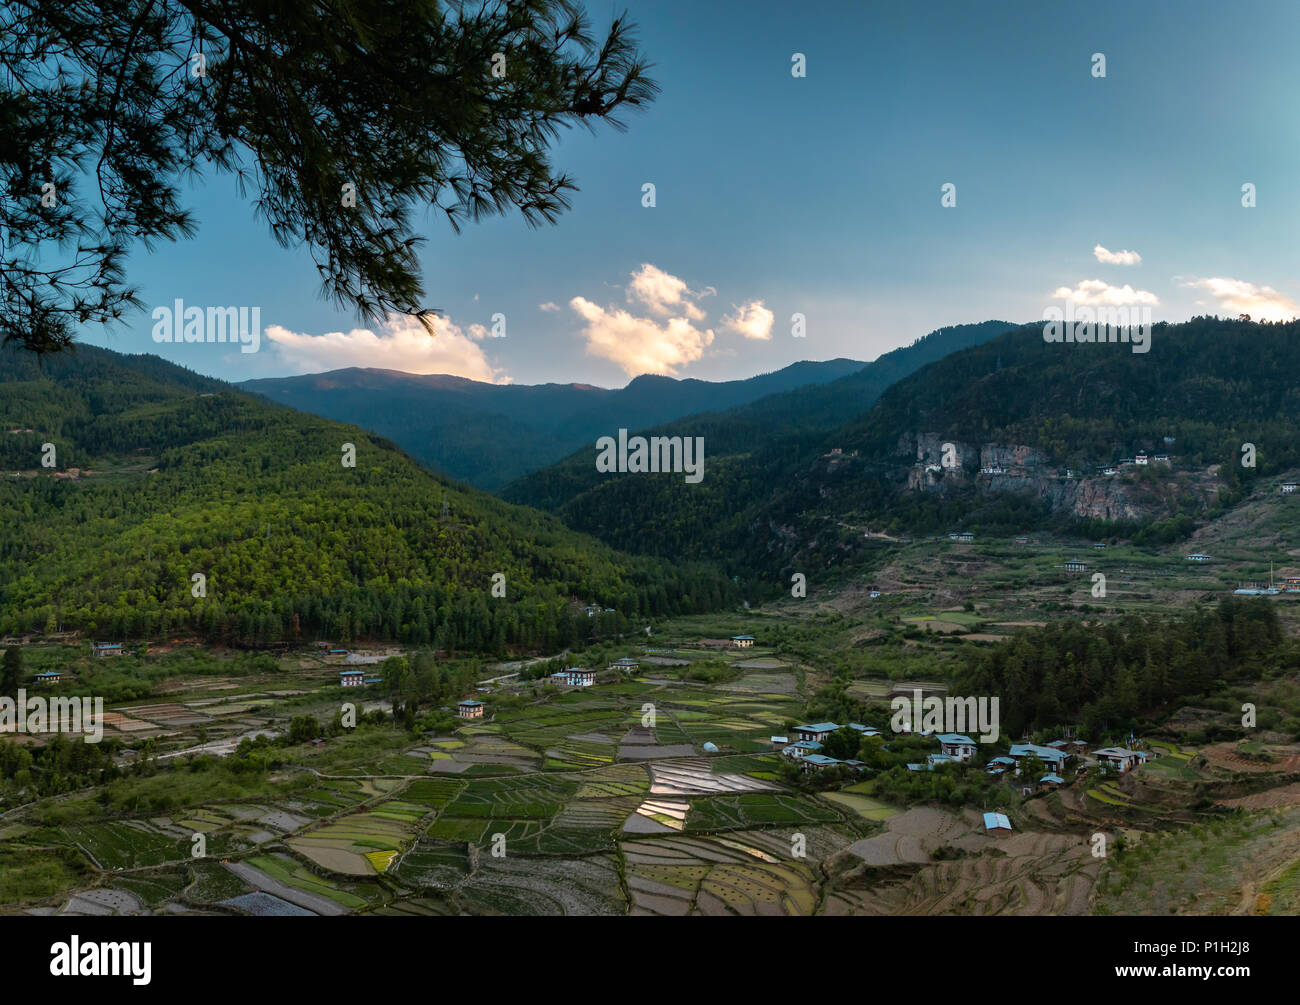 Vista panoramica di Paro Taktsang Village e il famoso Tiger's Nest monastero è anche visibile in alto a destra Foto Stock